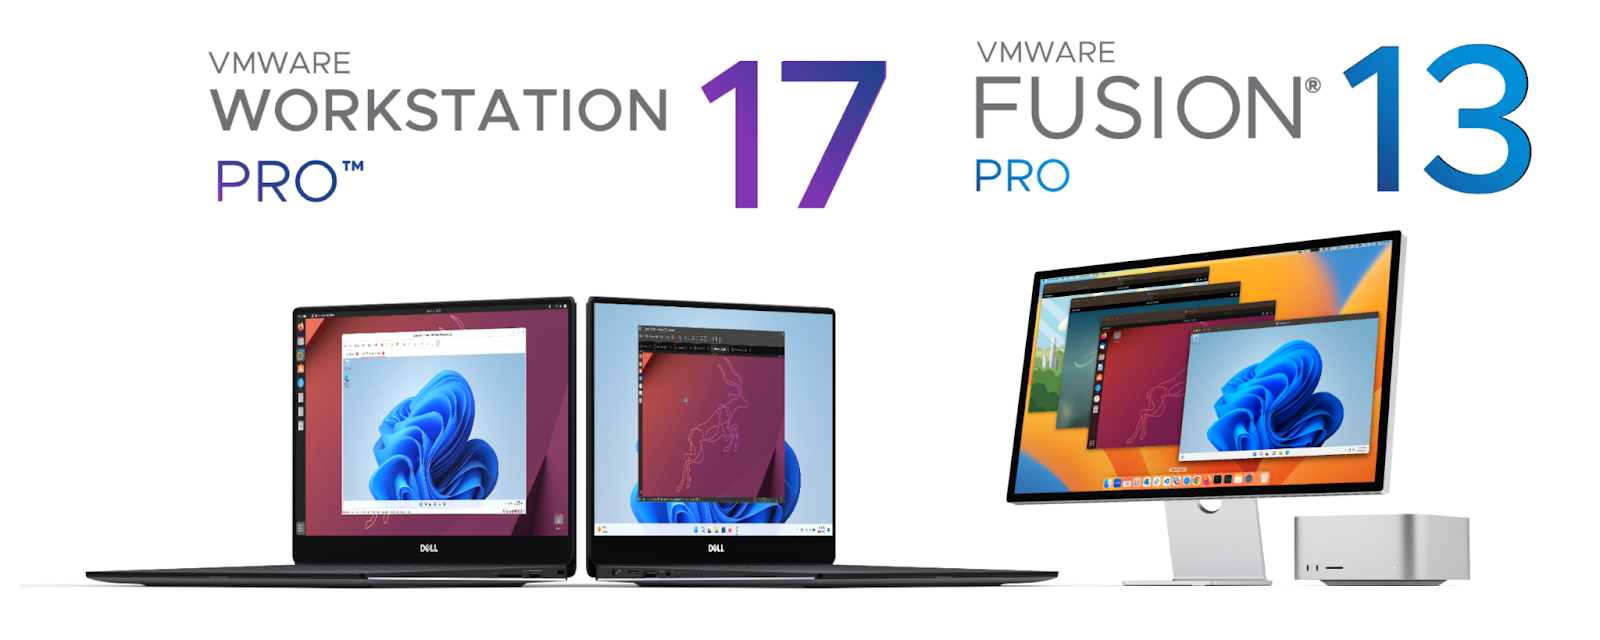 WMware Fusion Pro ve Workstation Pro Kişisel Kullanım için Ücretsiz Oldu